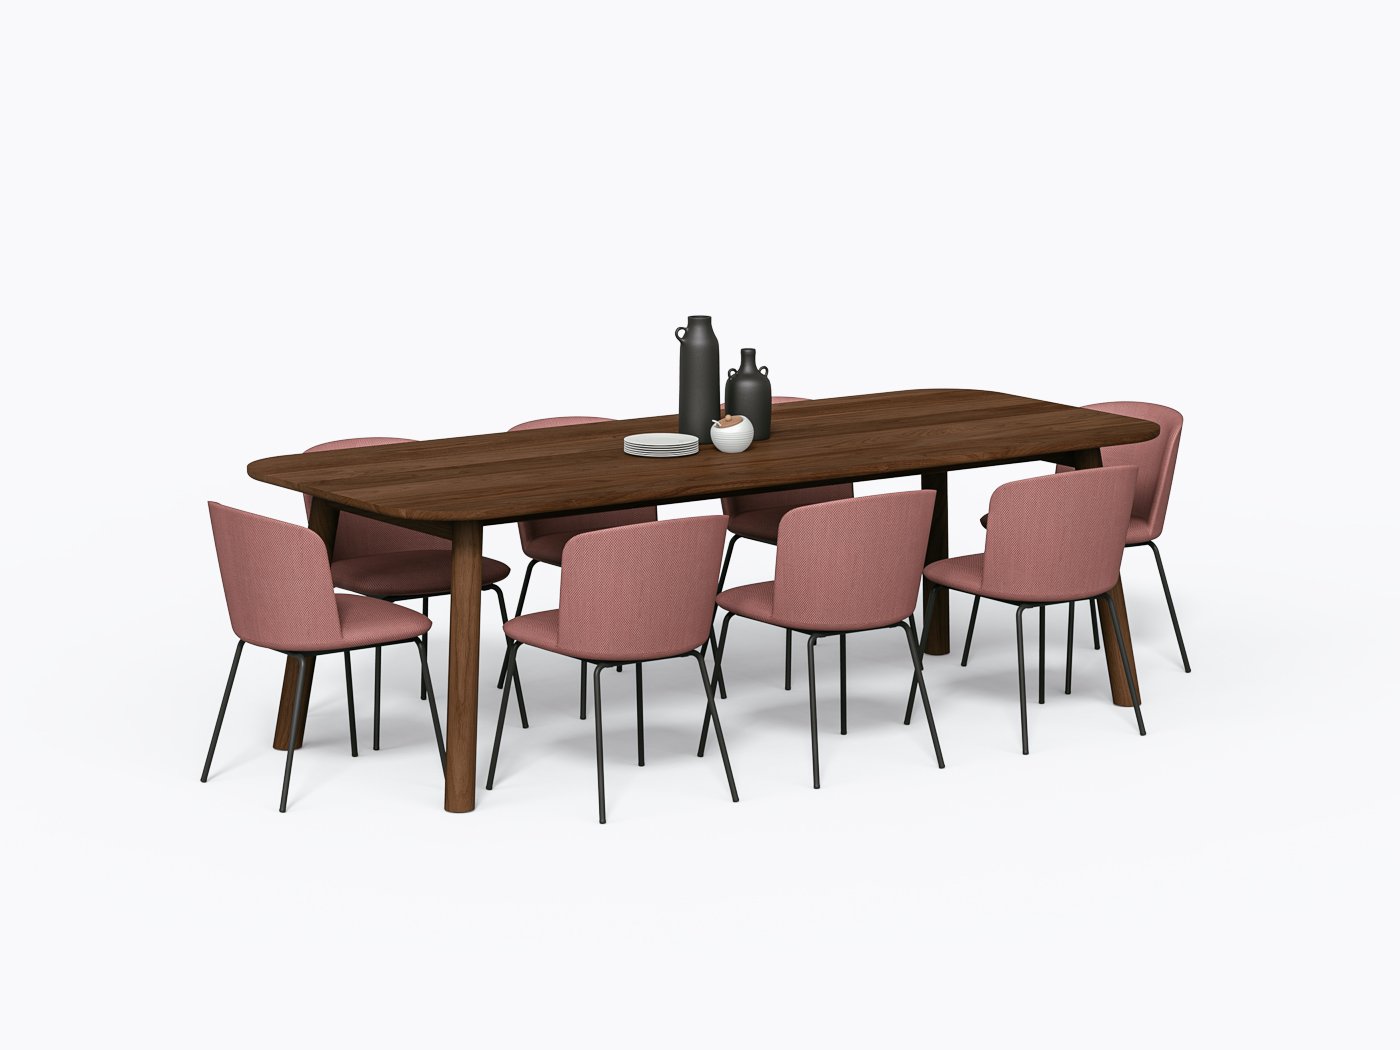 Swan Dining Table - 40" X 96" - Walnut